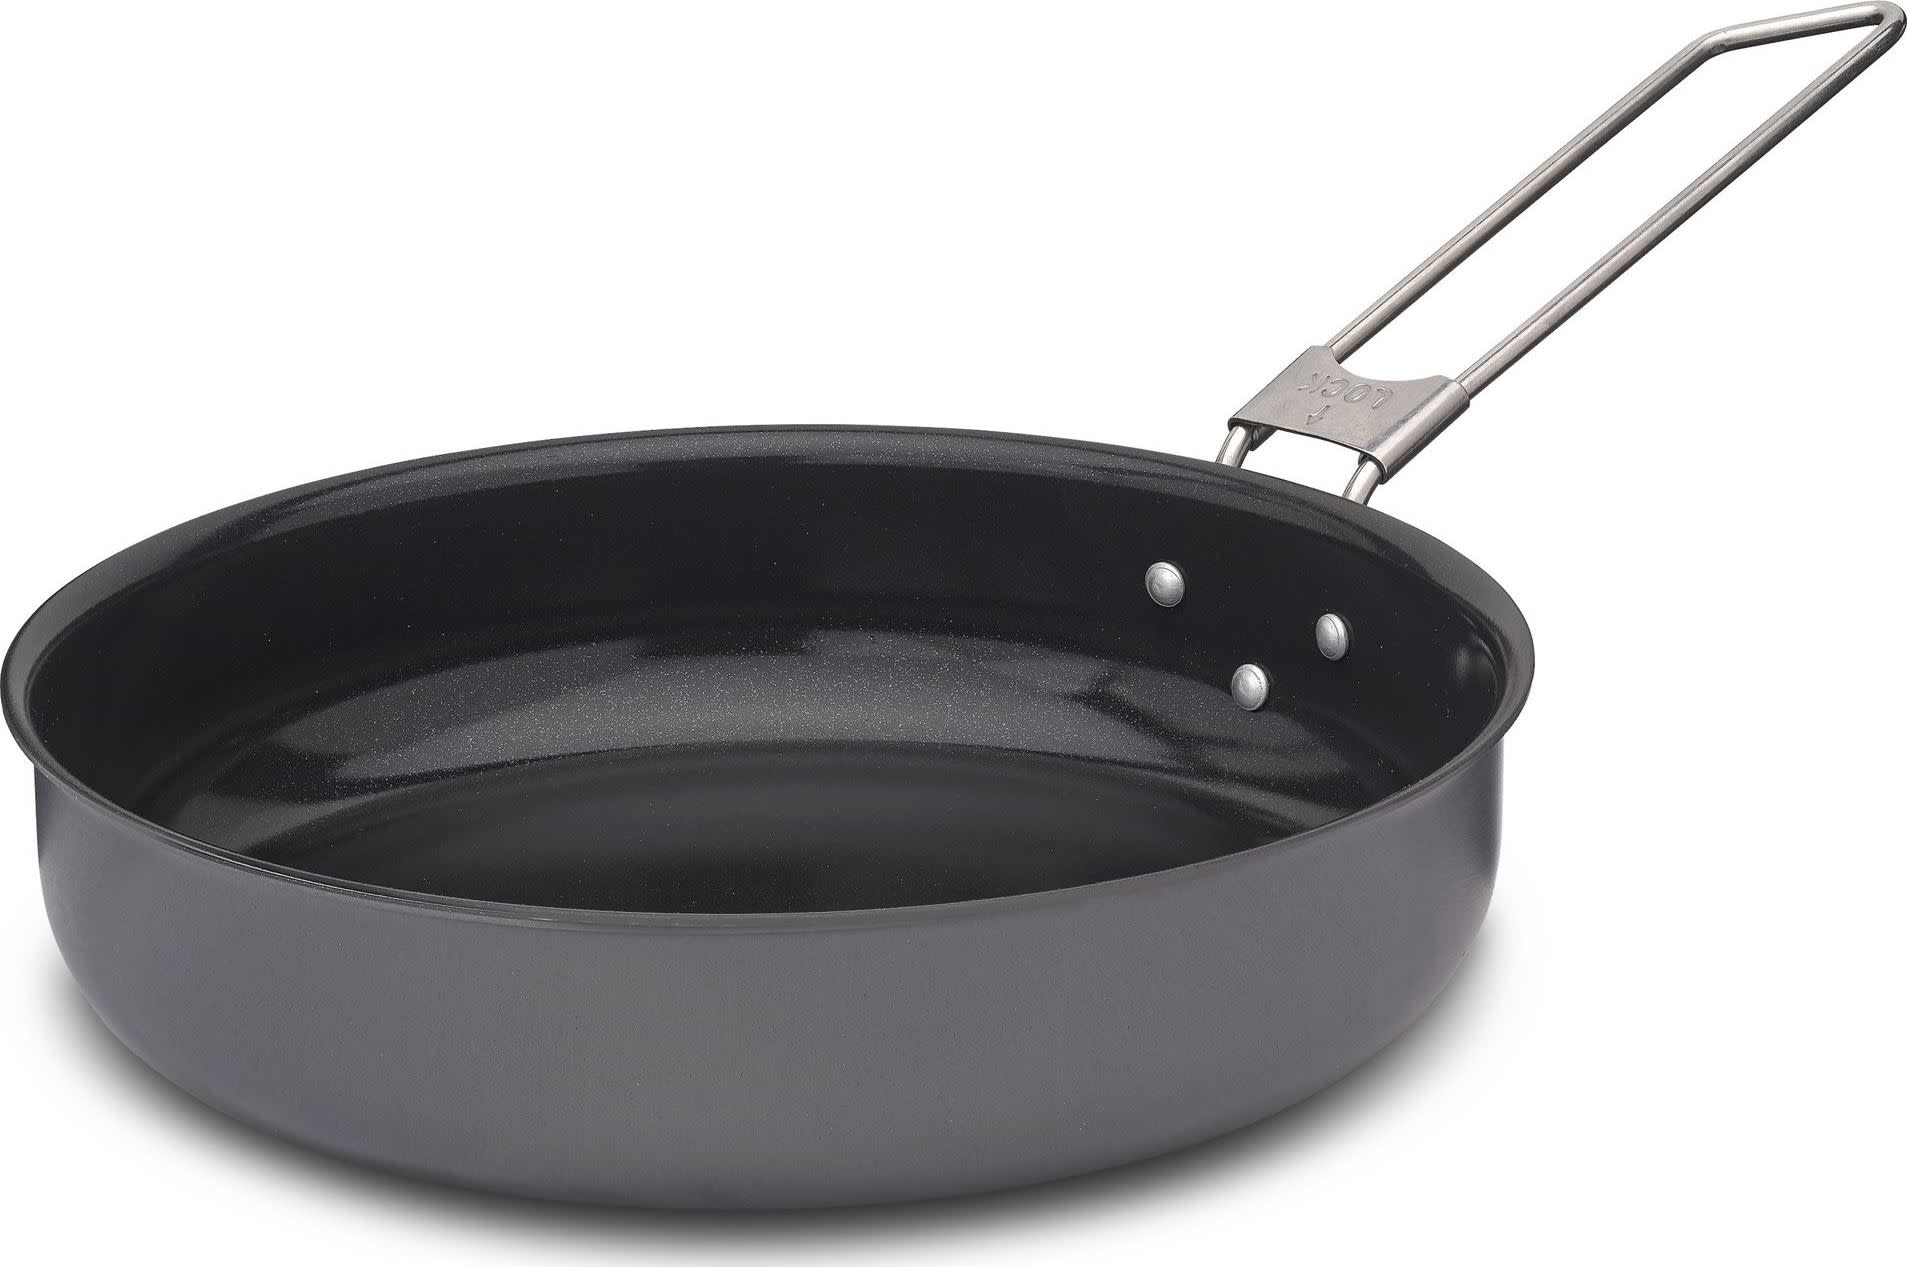 LiTech Frying Pan